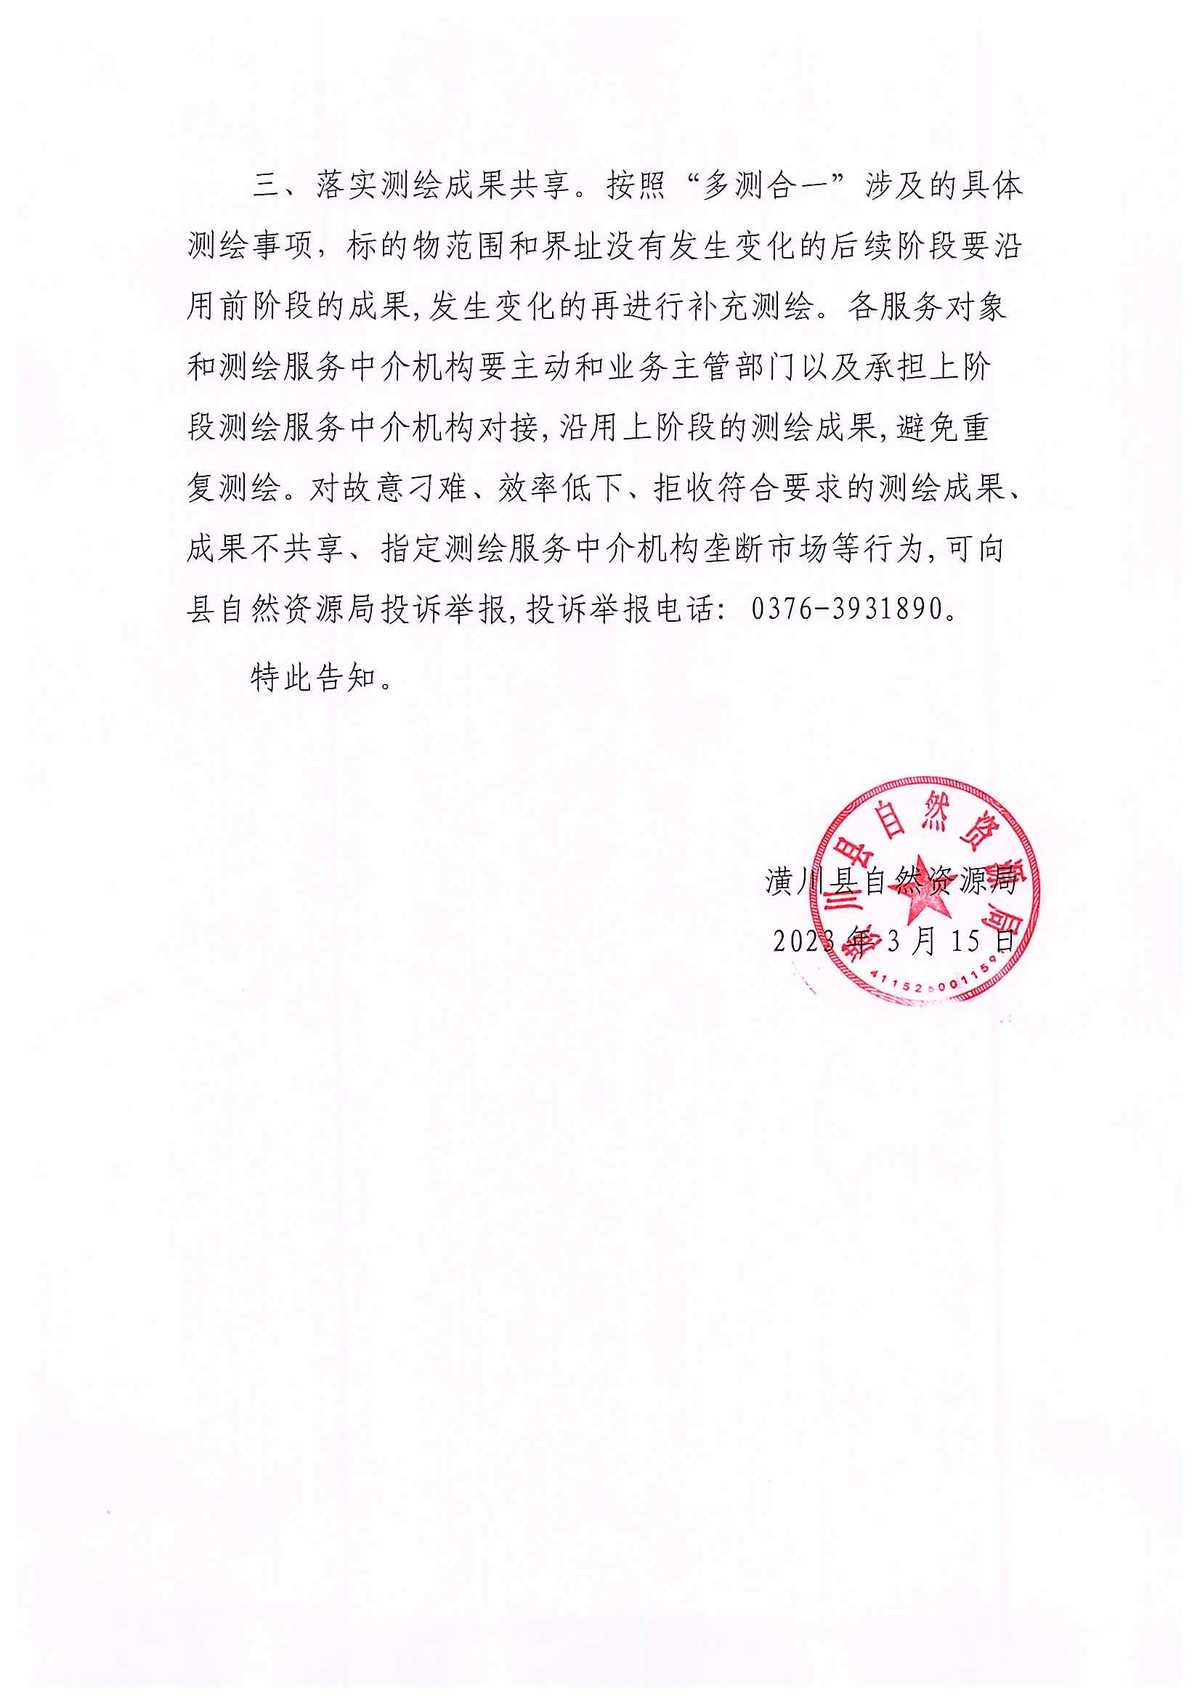 潢川县自然资源局关于公开选用测绘服务中介机构的公示